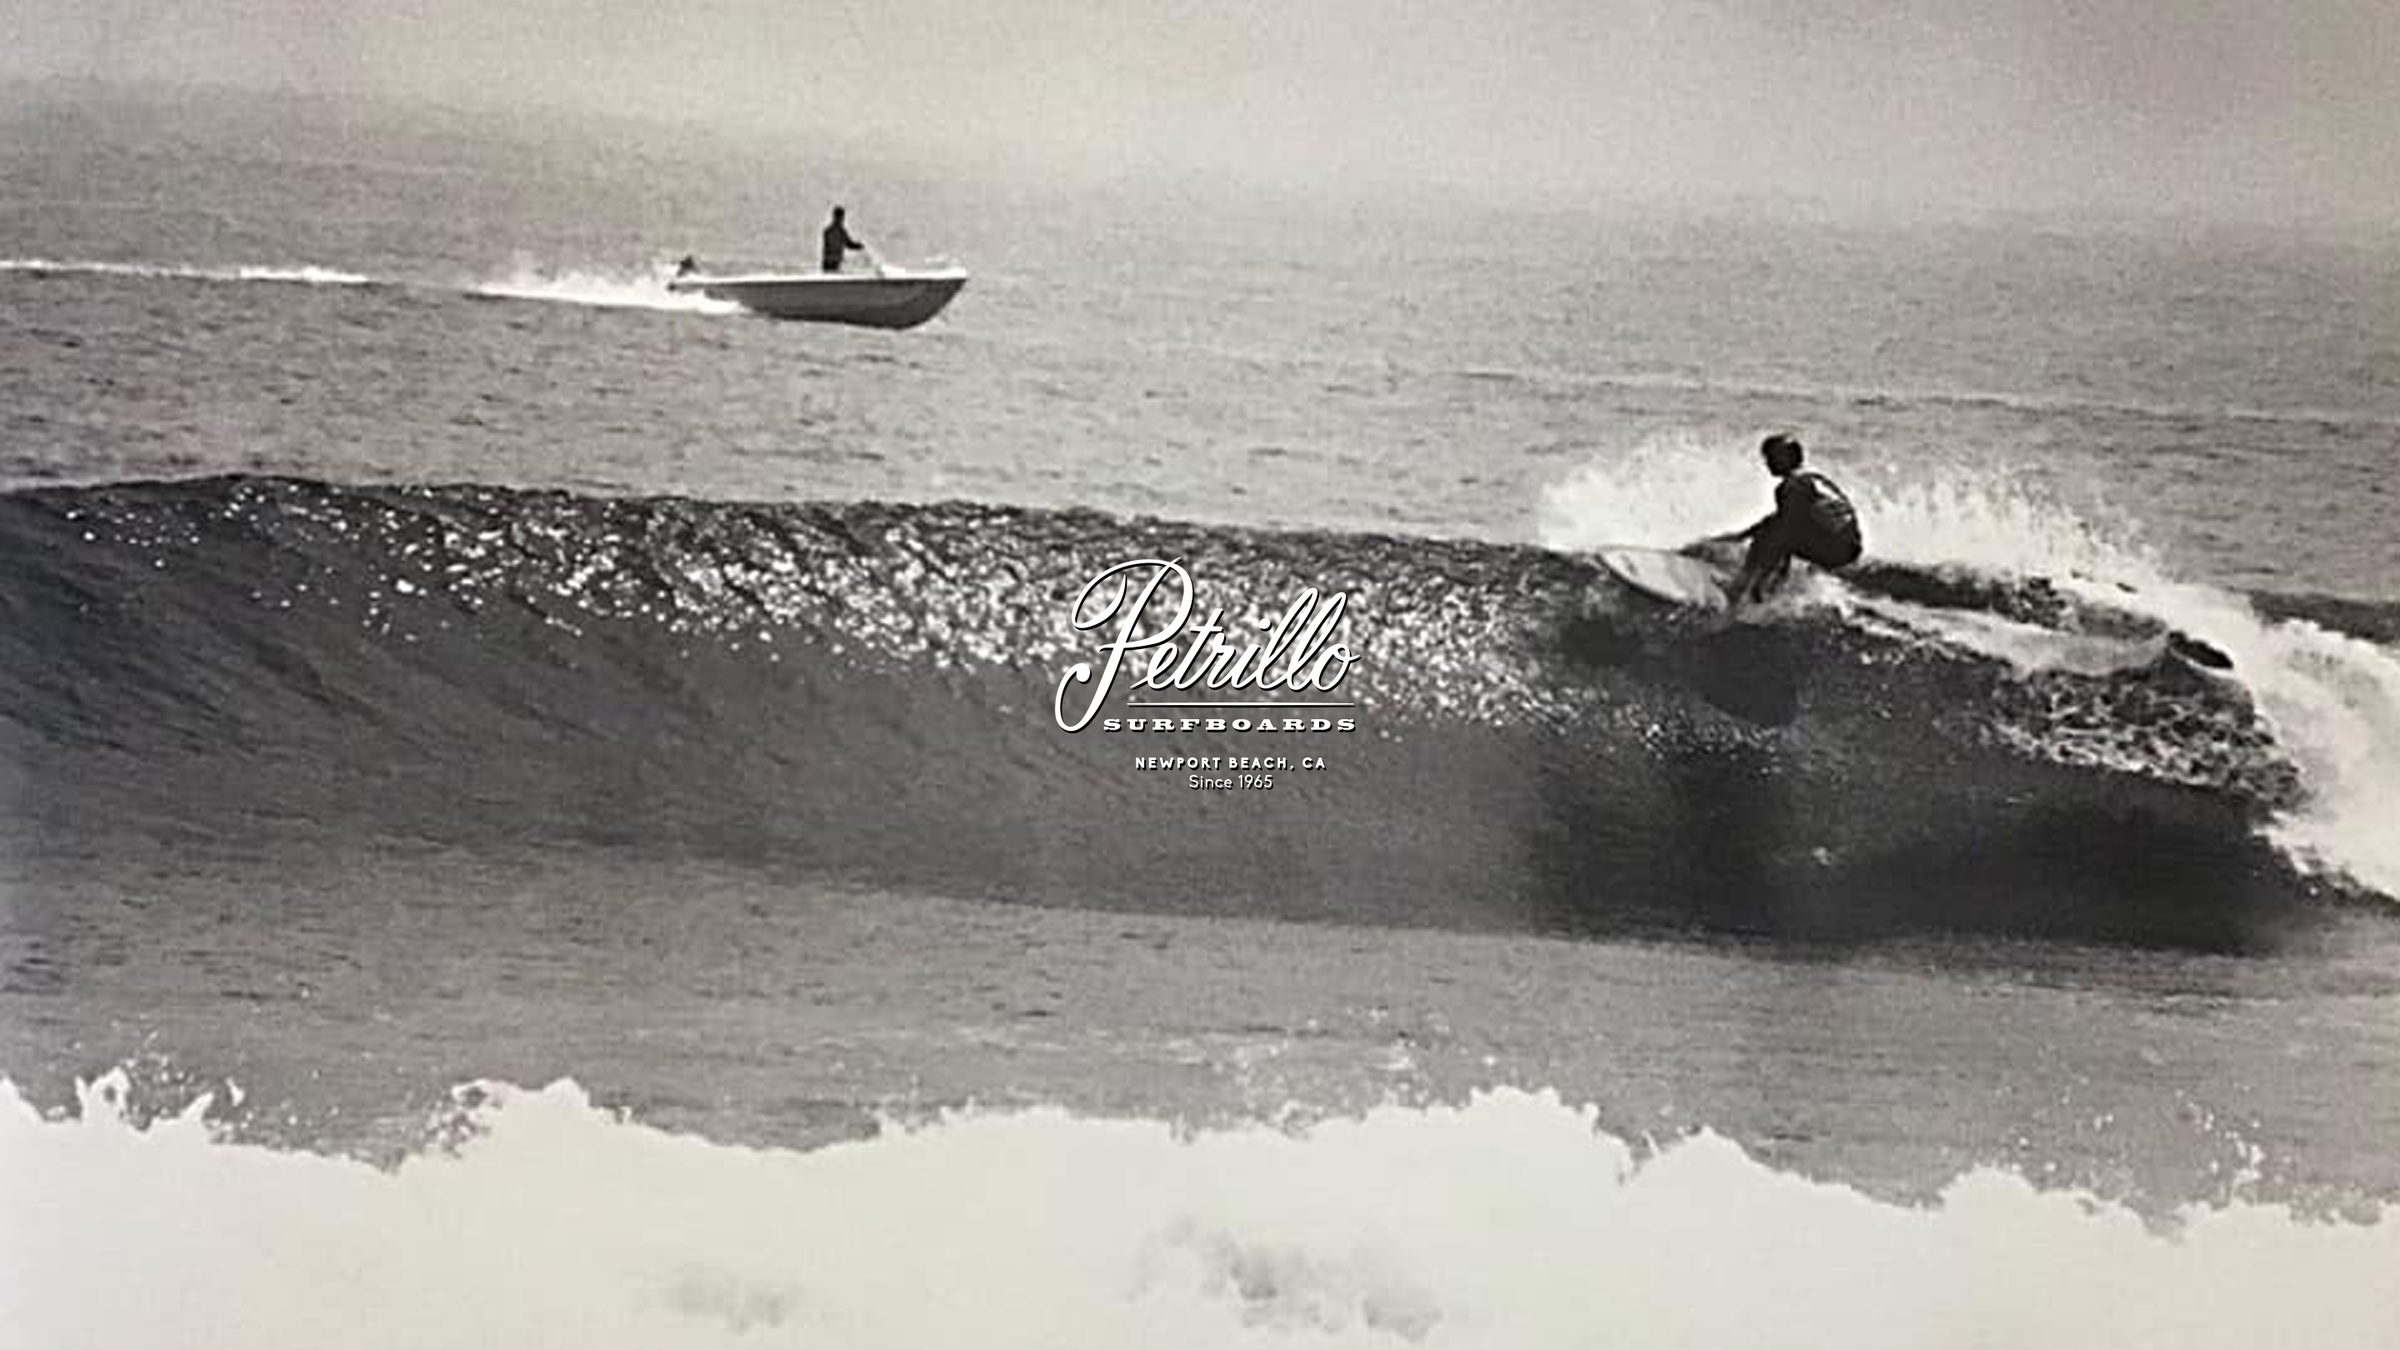 Petrillo Surfboards